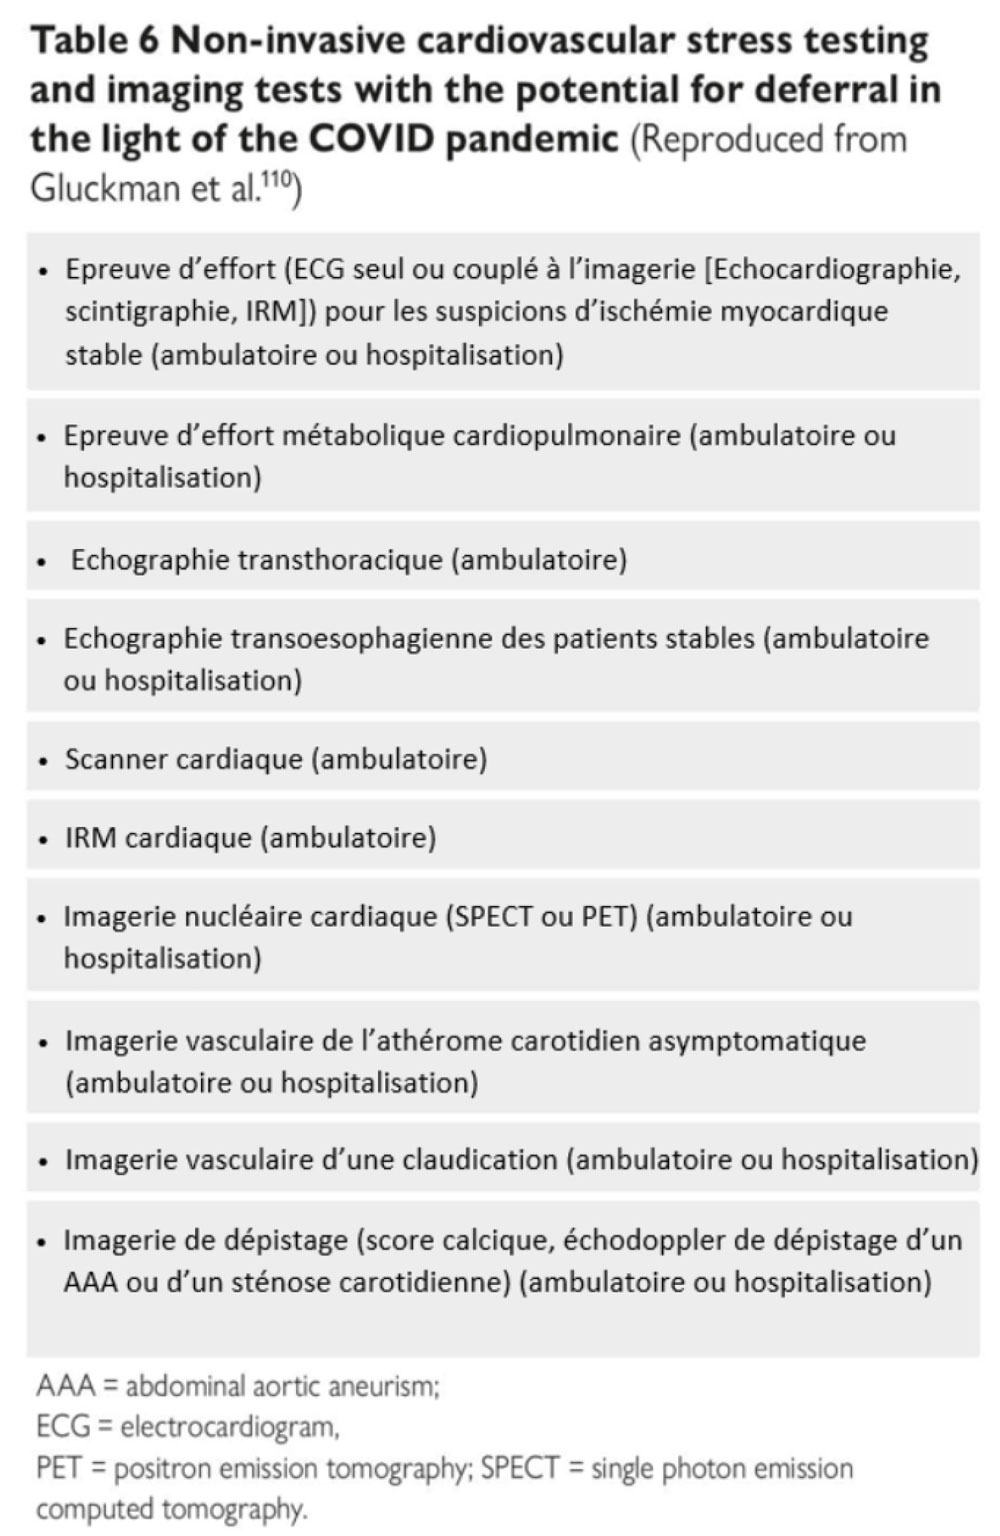 Tableau 6 – Report des examens cardivasculaires non invasifs d’effort et d’imagerie pendant la pandémie COVID-19 (D’après Gluckman et al.110)